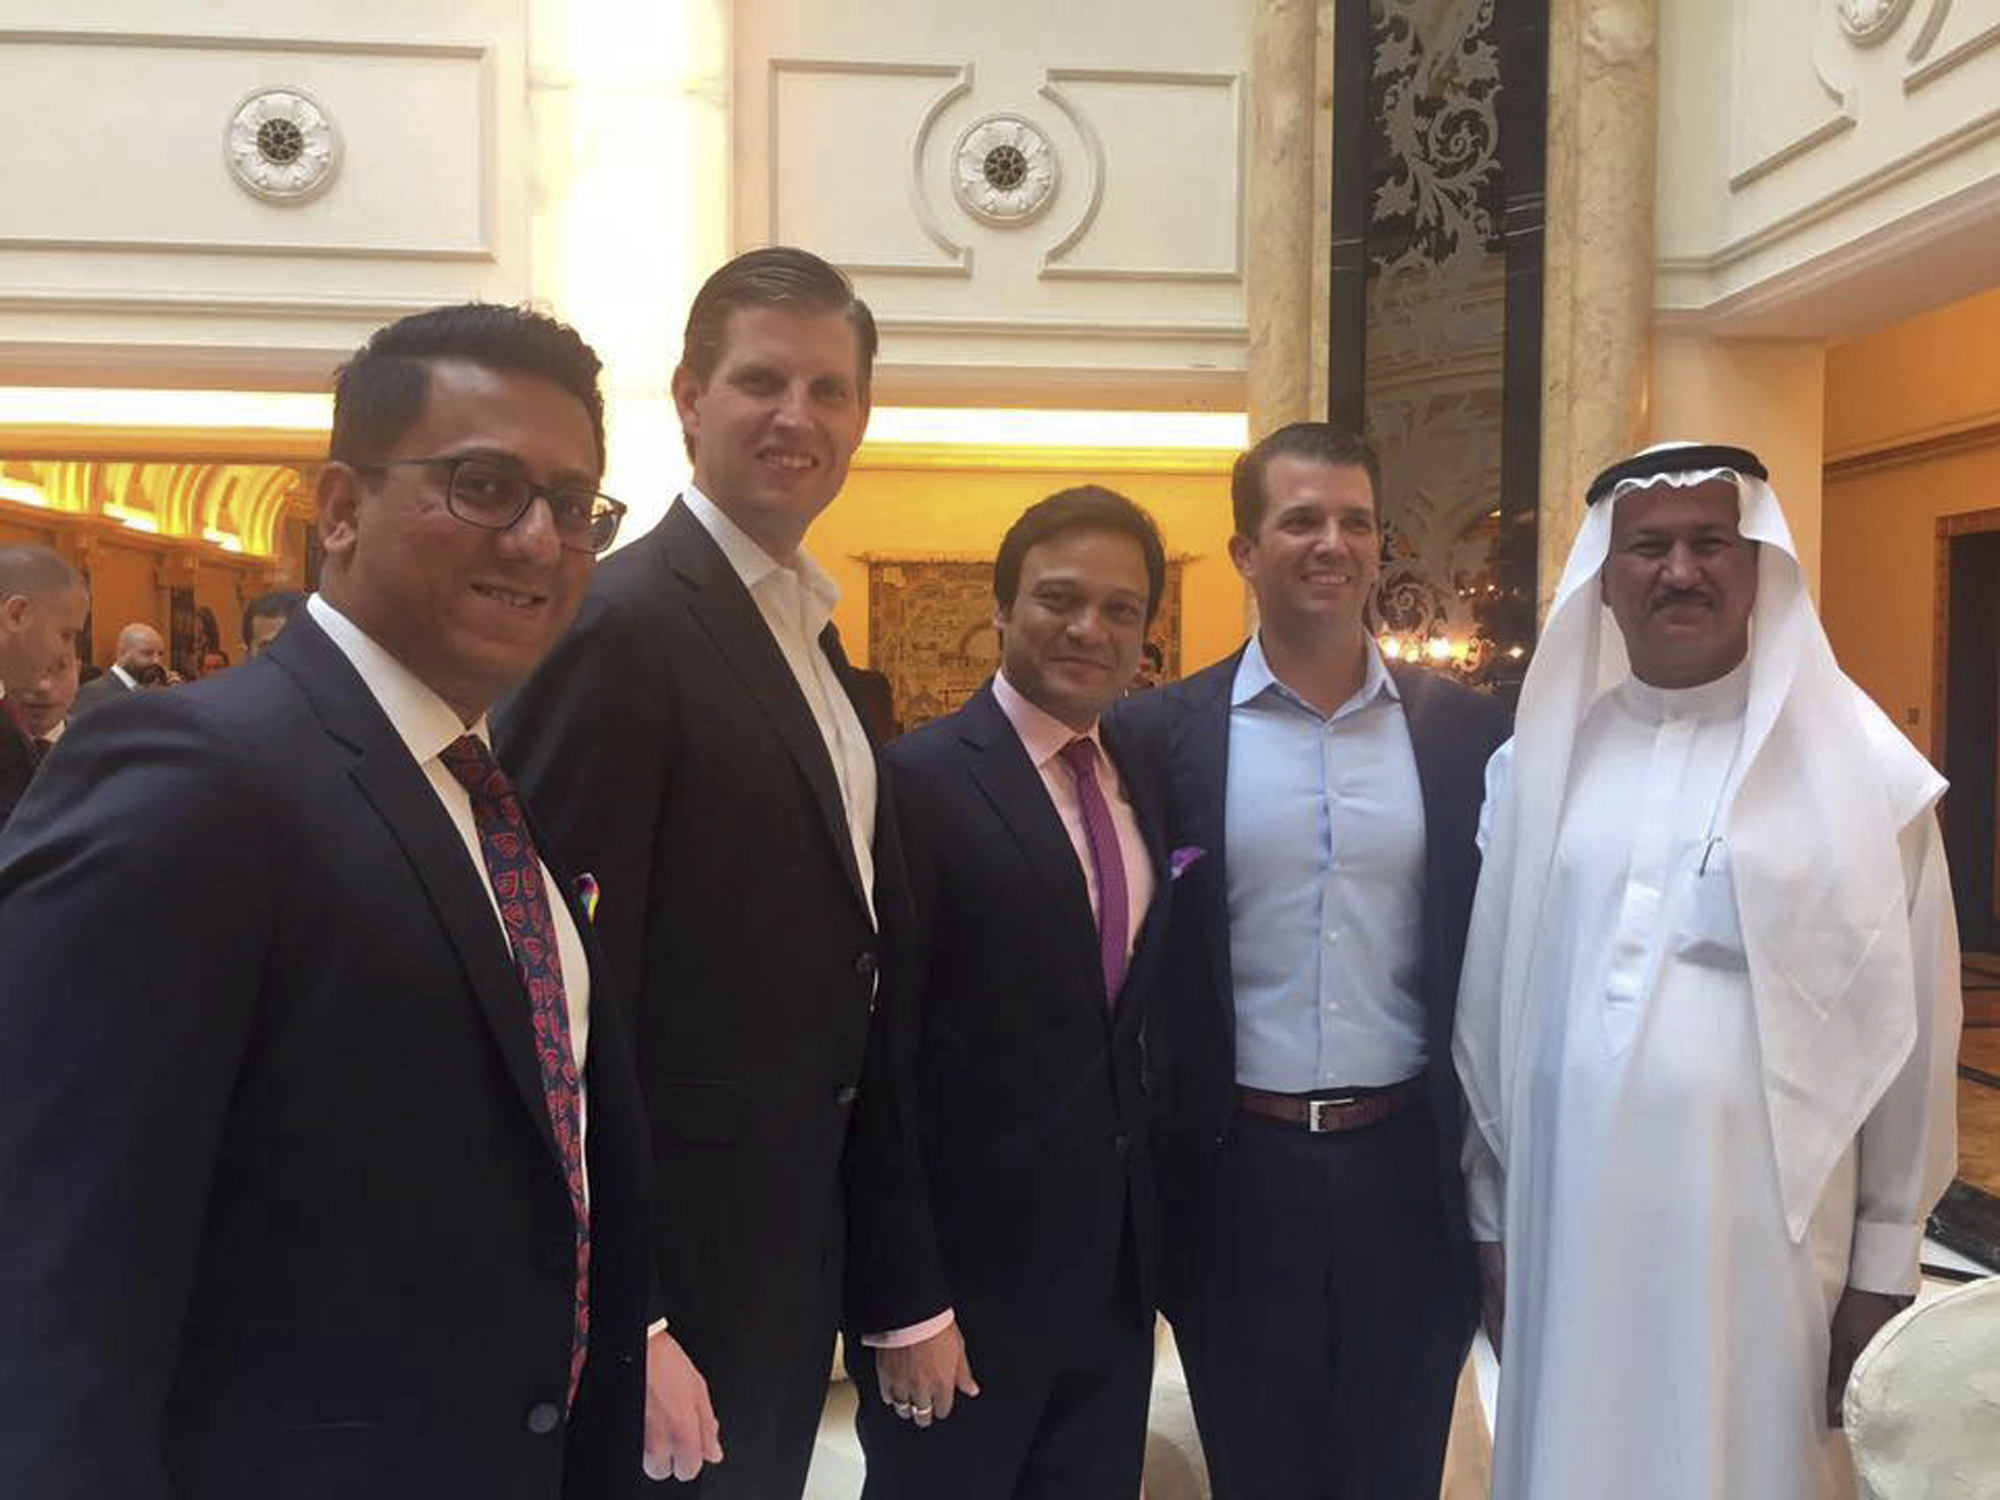 Hijos de Trump se reúnen con élite de Dubái para inaugurar campo de golf